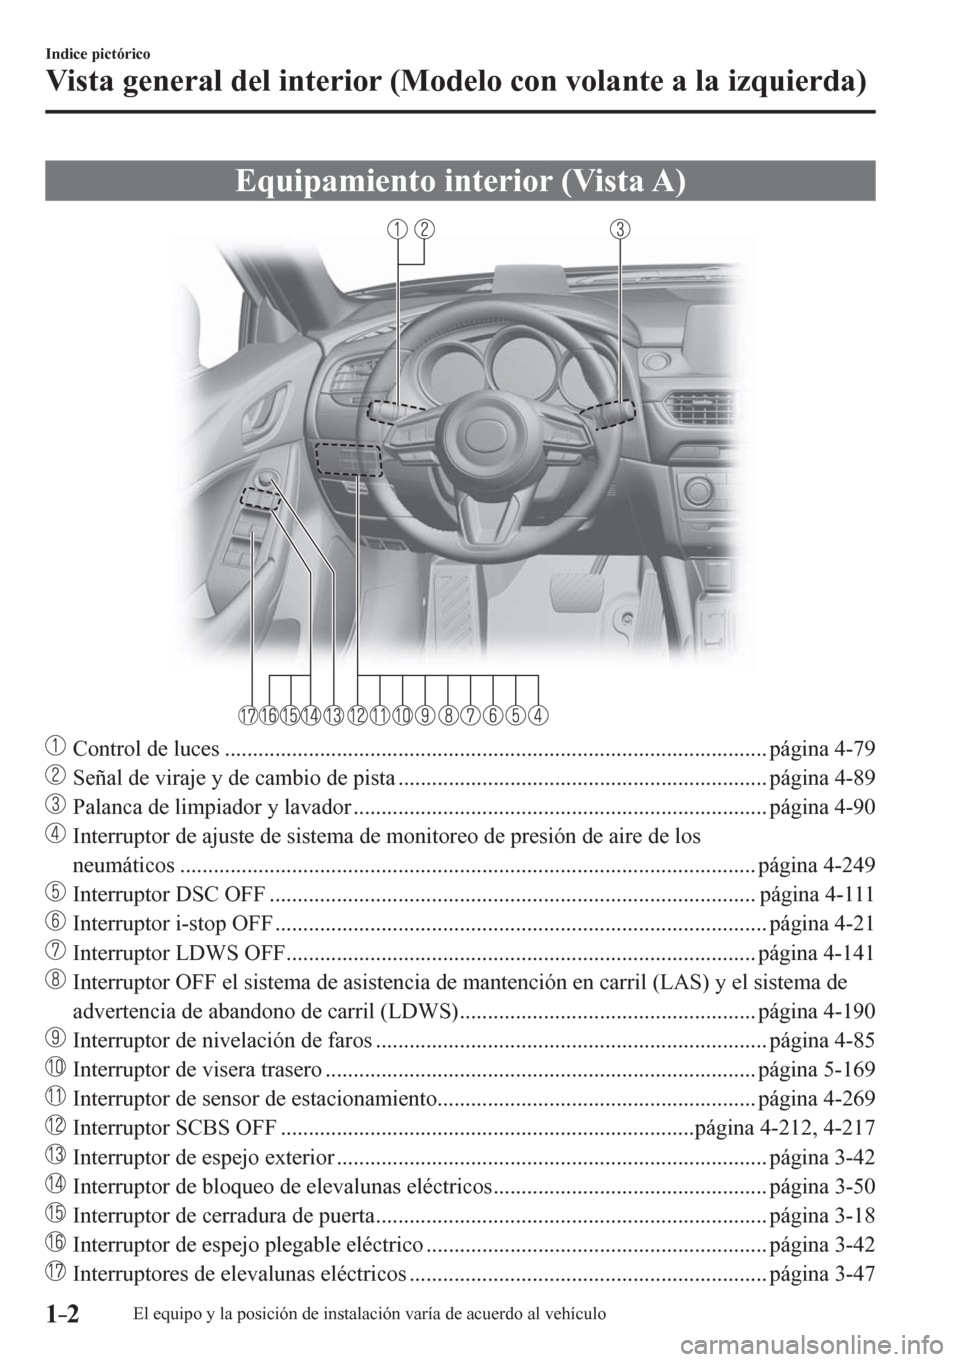 MAZDA MODEL 6 2016  Manual del propietario (in Spanish) 1–2
Indice pictórico
Vista general del interior (Modelo con volante a la izquierda)
      E q u i p a m i e nto interior (Vista A)
     Control de luces ............................................